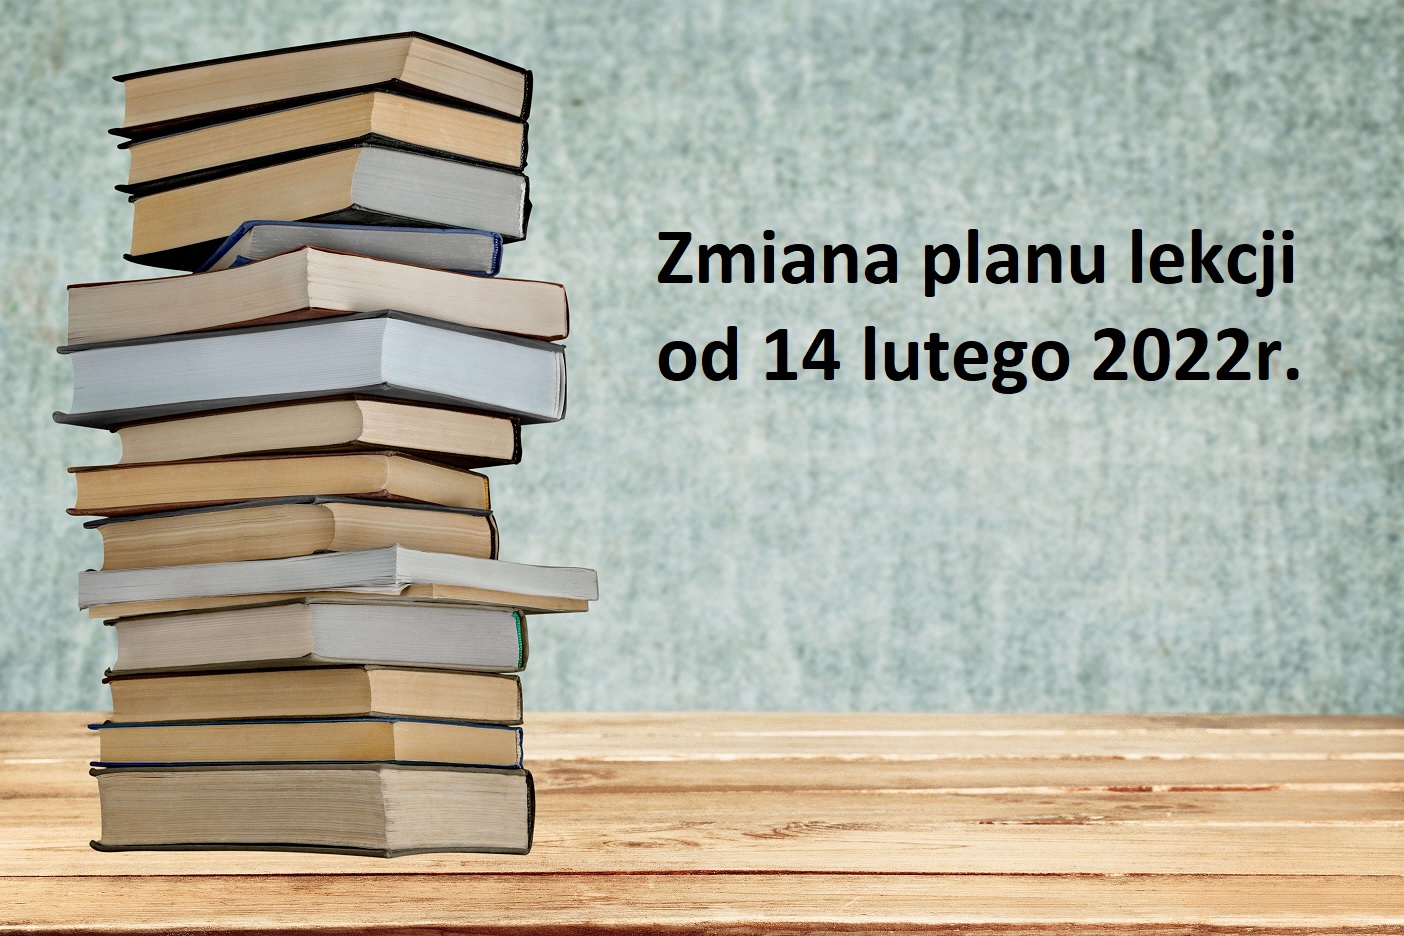 Zmiana planu lekcji od 14.02.2022